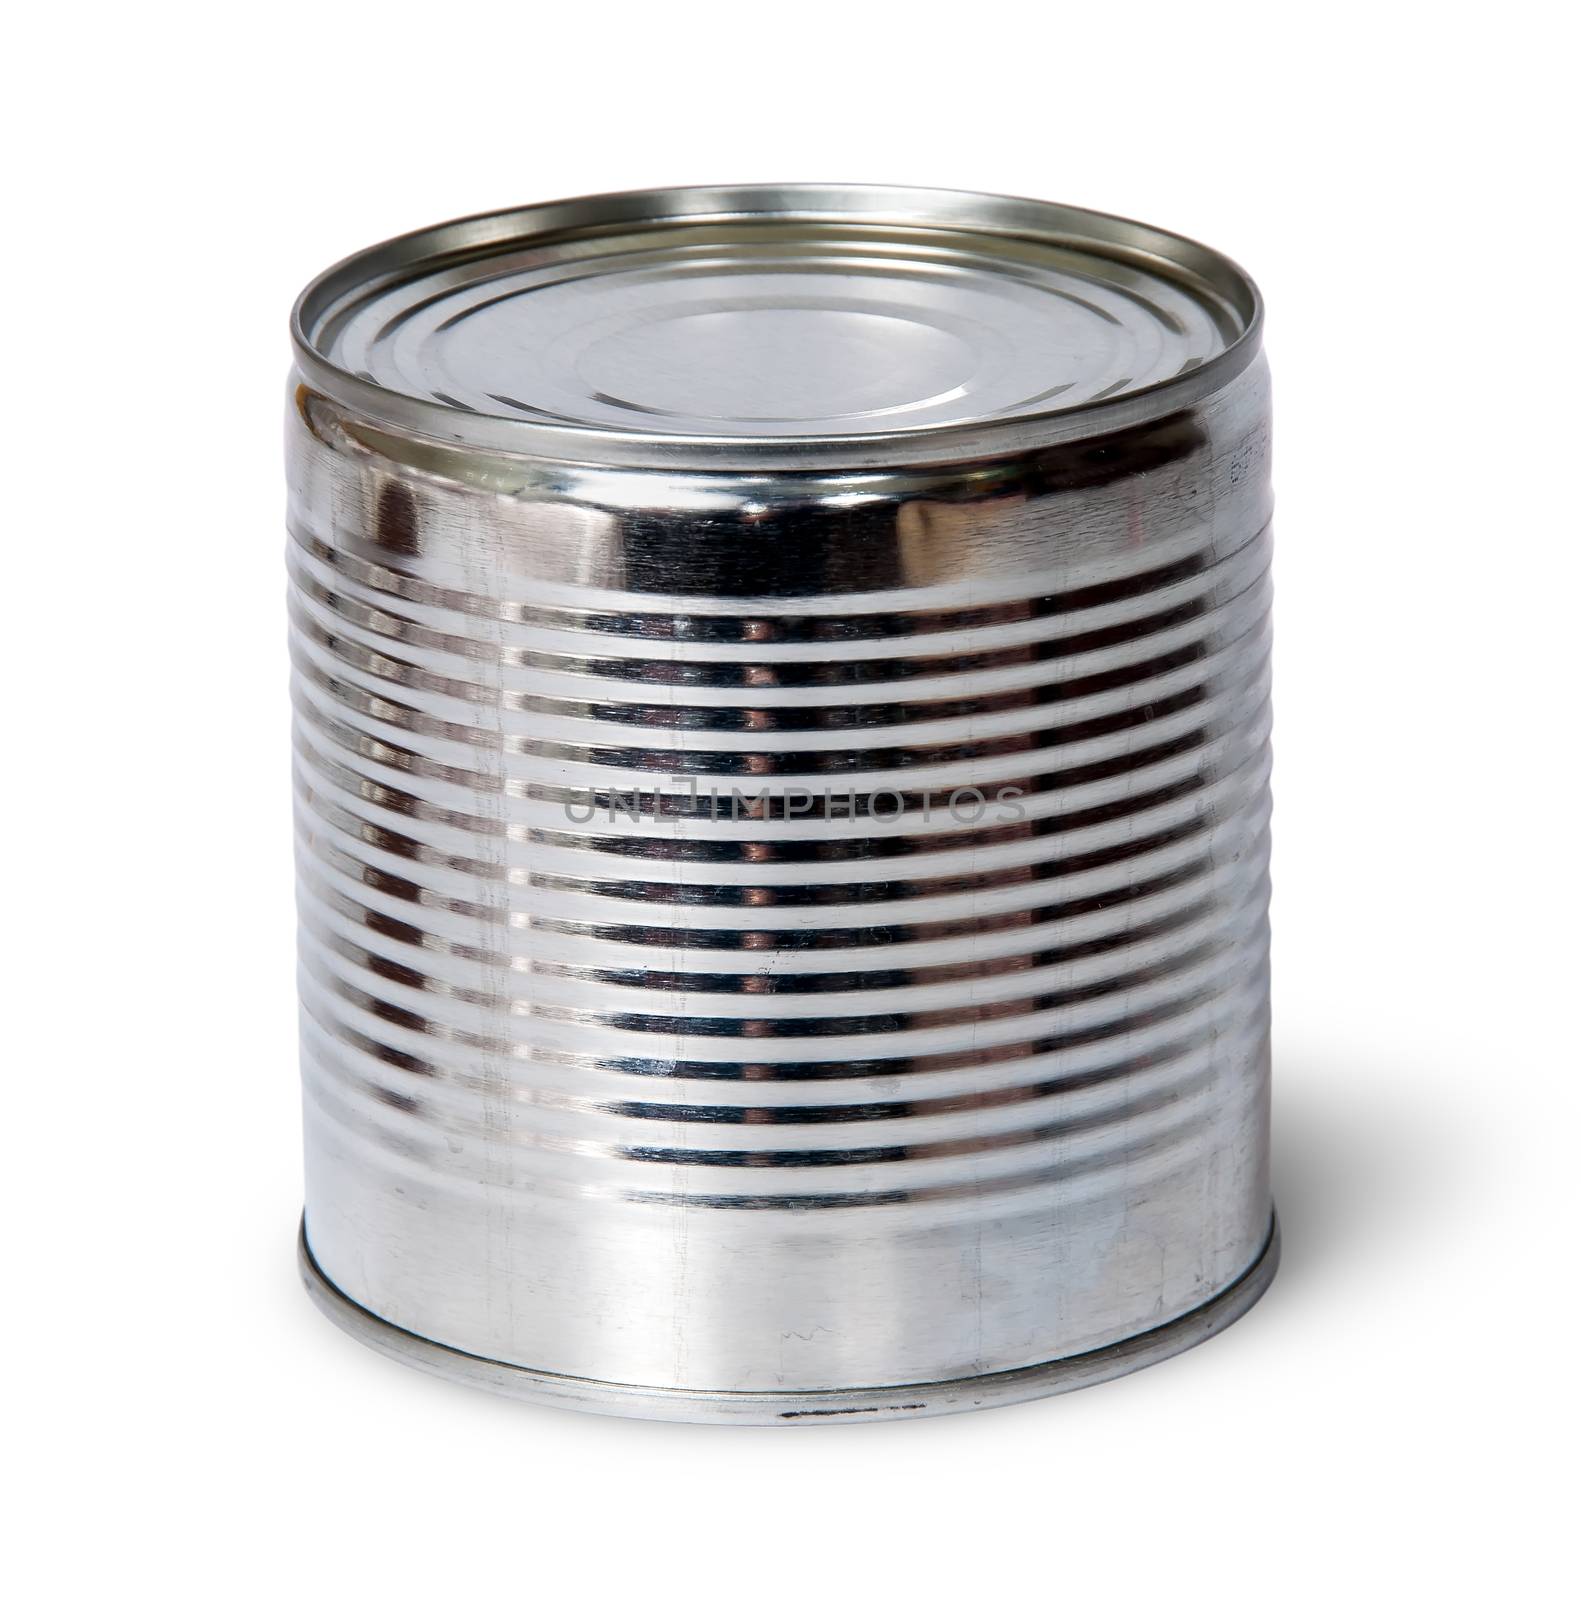 Silver tin can by Cipariss